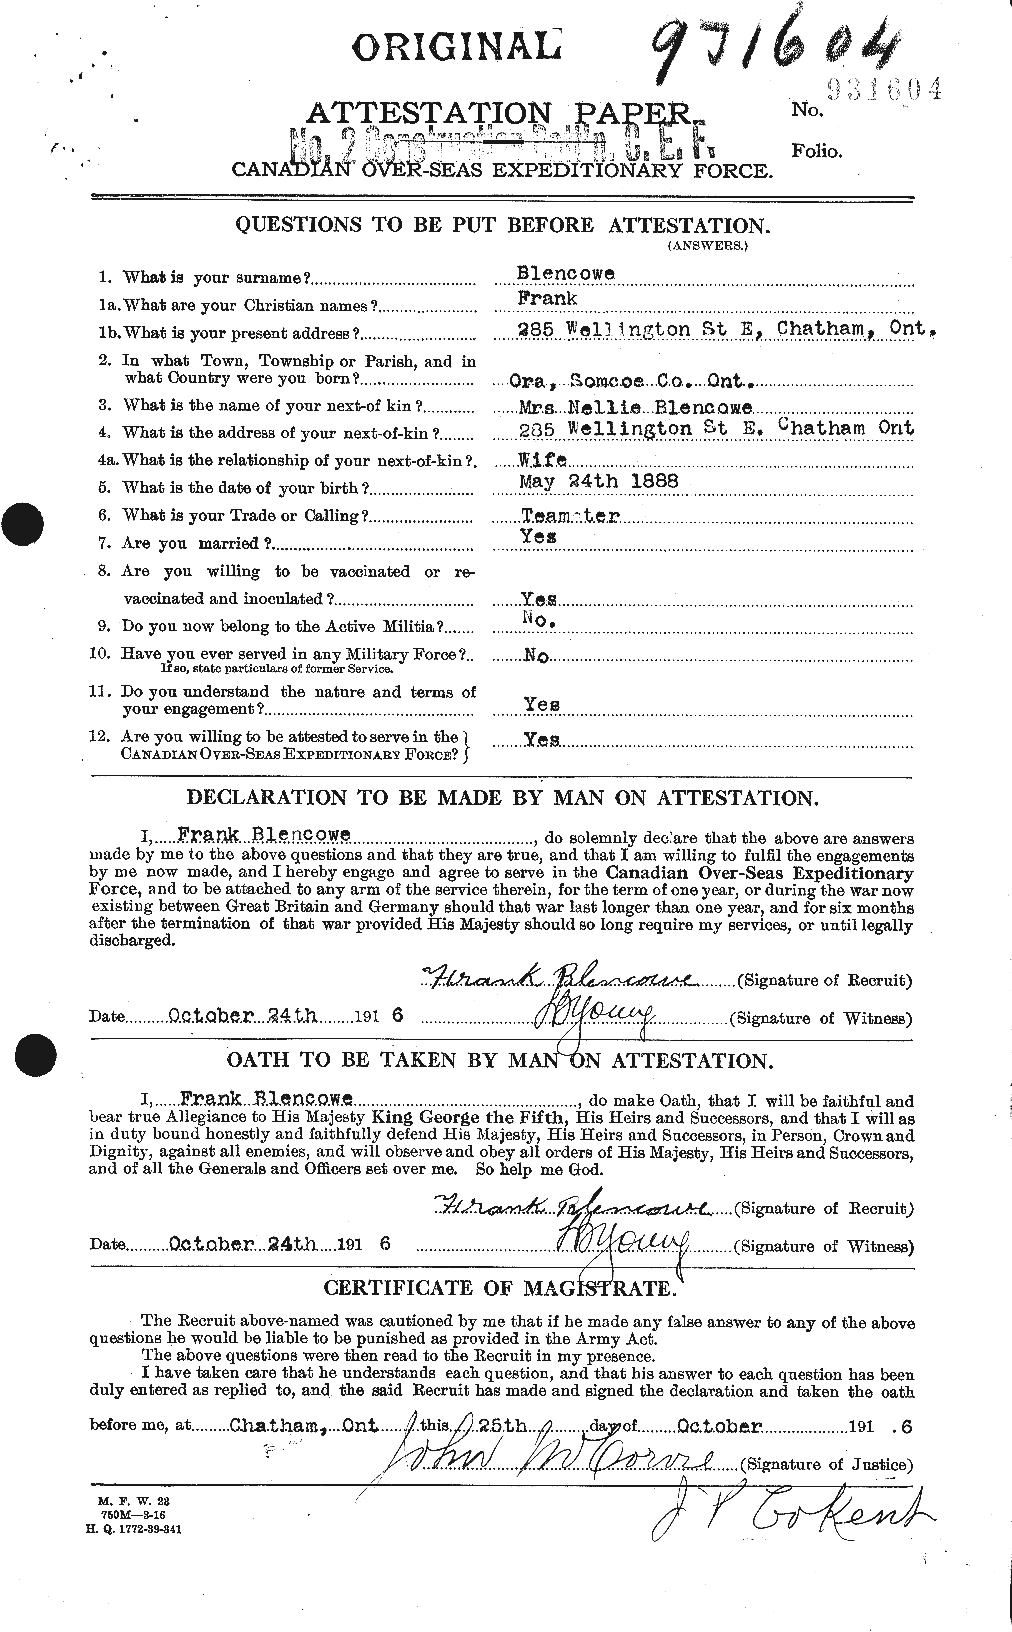 Dossiers du Personnel de la Première Guerre mondiale - CEC 247956a